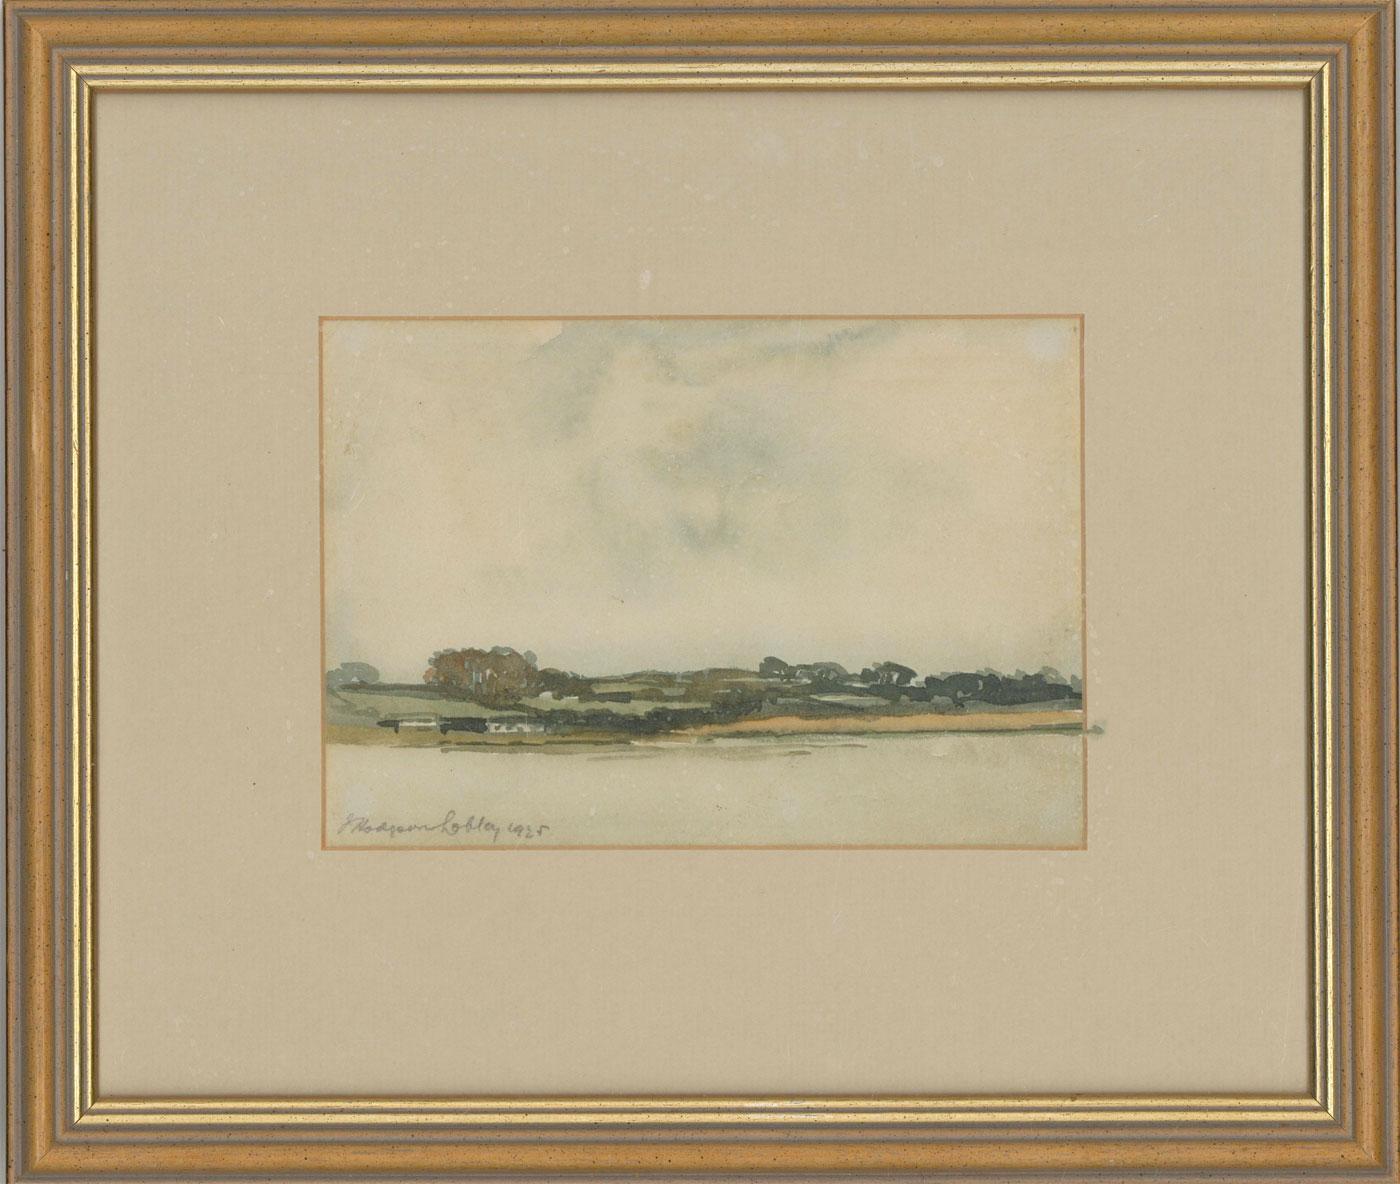 Unknown Landscape Art - John Hodgson Lobley (1878-1954) - 1925 Watercolour, River Landscape